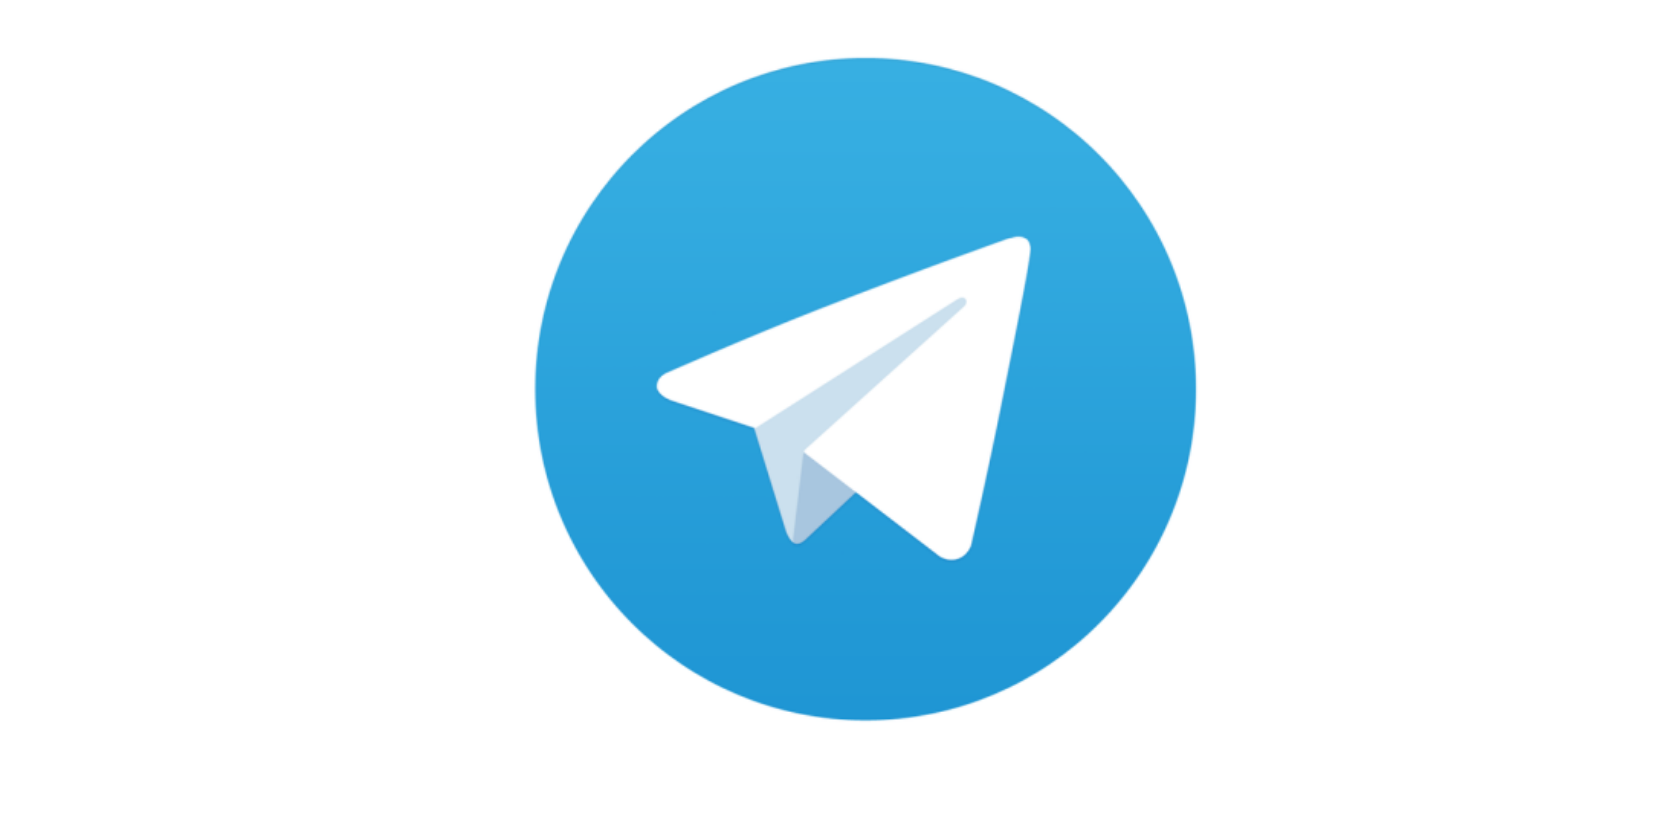 telegram online messenger